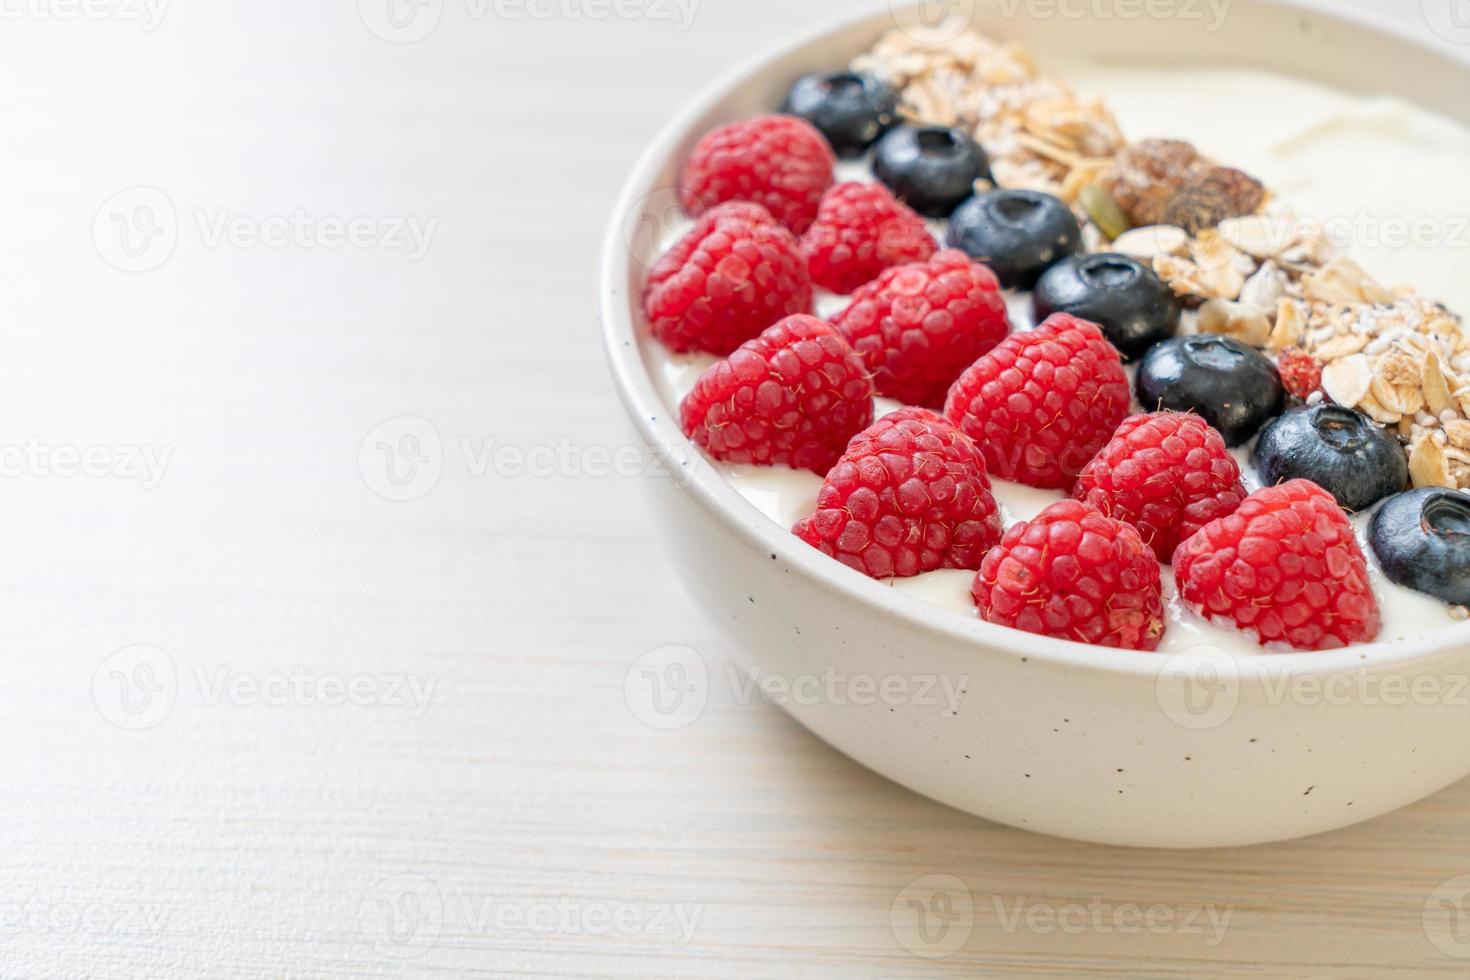 zelfgemaakte yoghurtkom met framboos, bosbes en granola - healthy food style foto